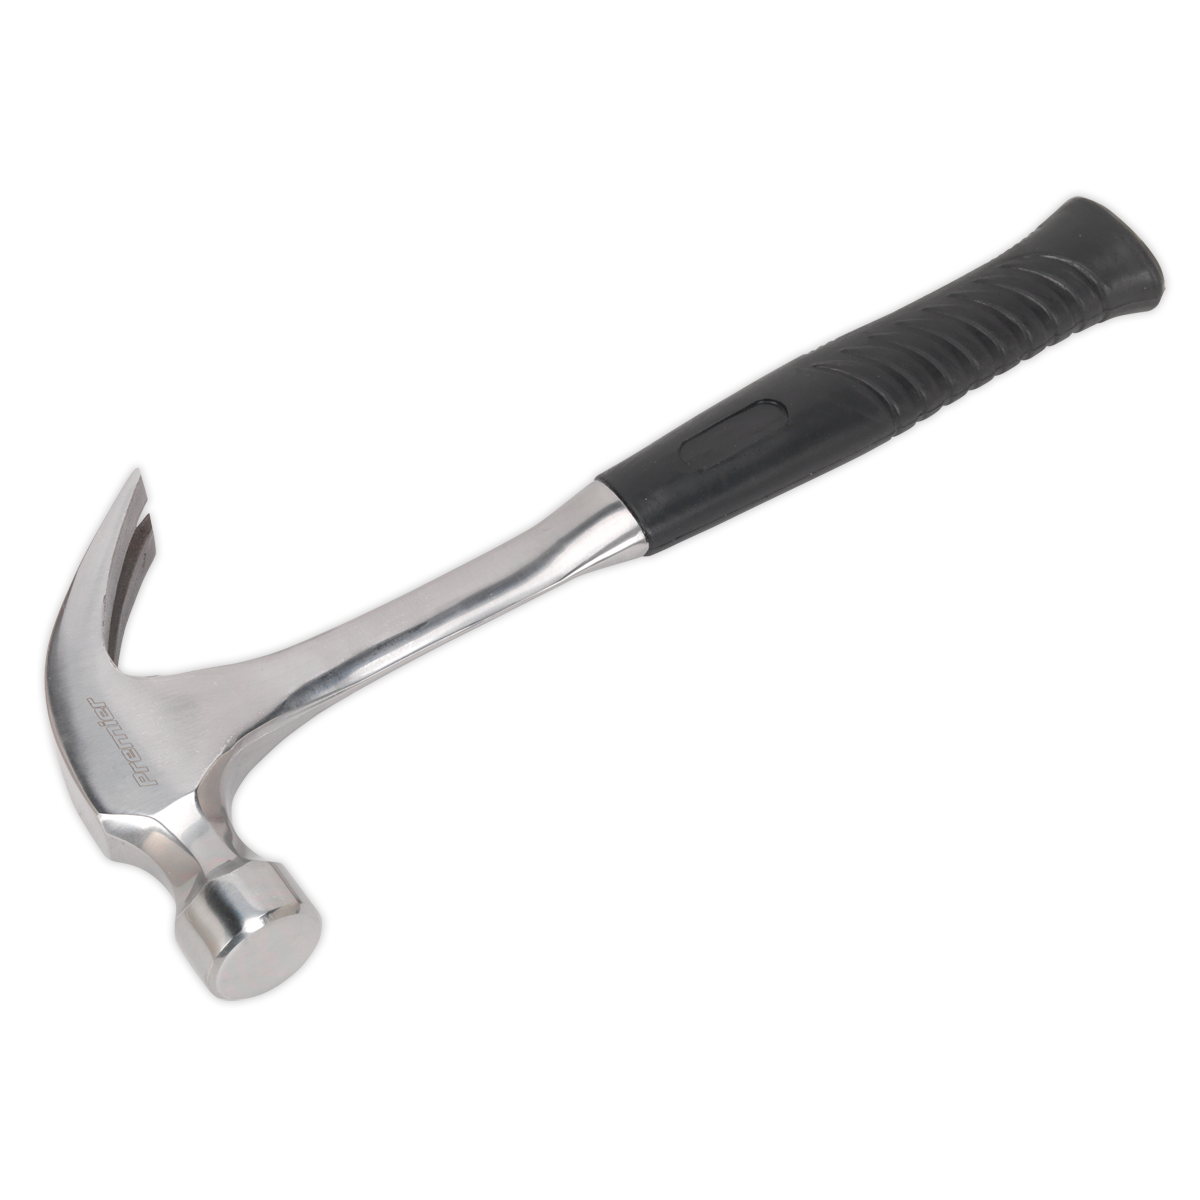 Sealey Claw Hammer 20oz One-Piece Steel Shaft